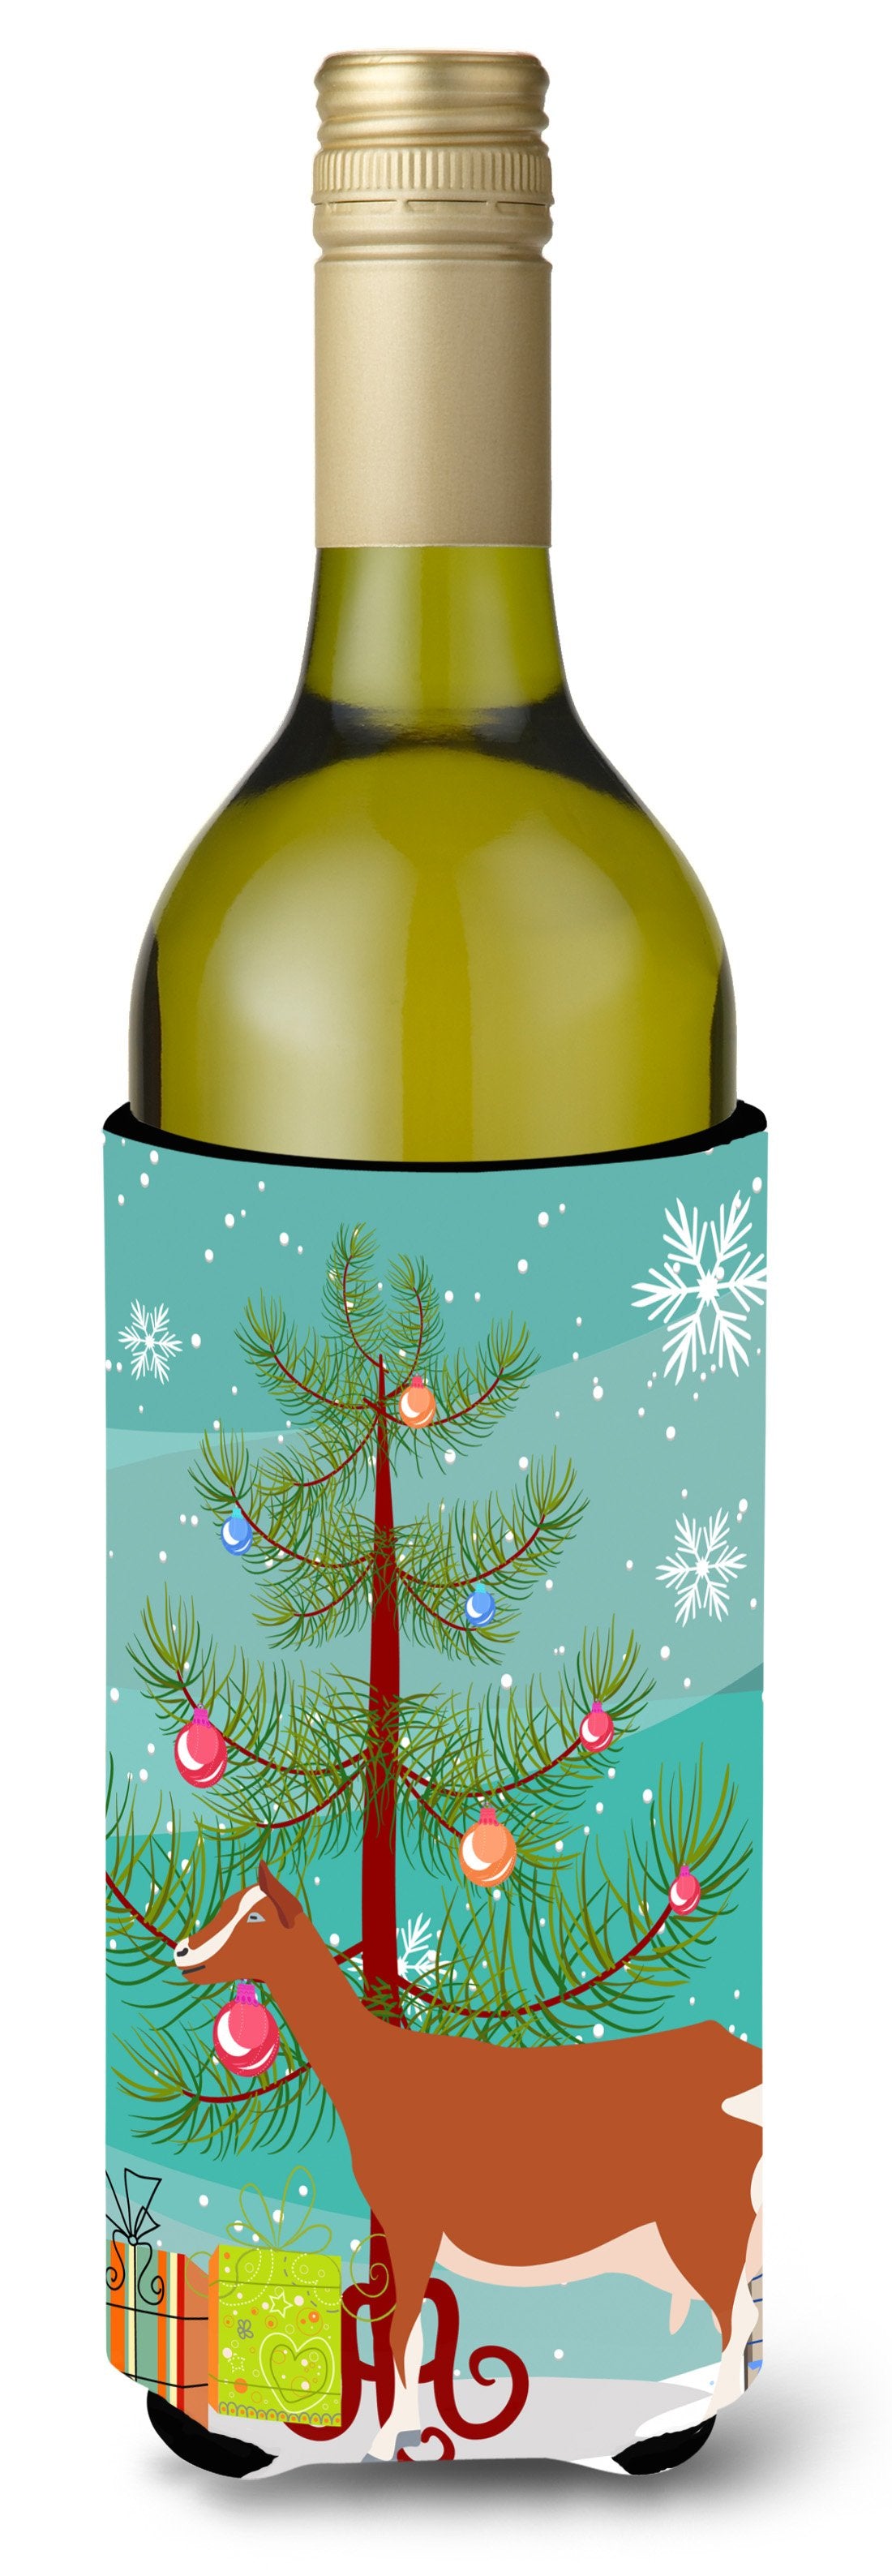 Toggenburger Goat Christmas Wine Bottle Beverge Insulator Hugger BB9248LITERK by Caroline's Treasures